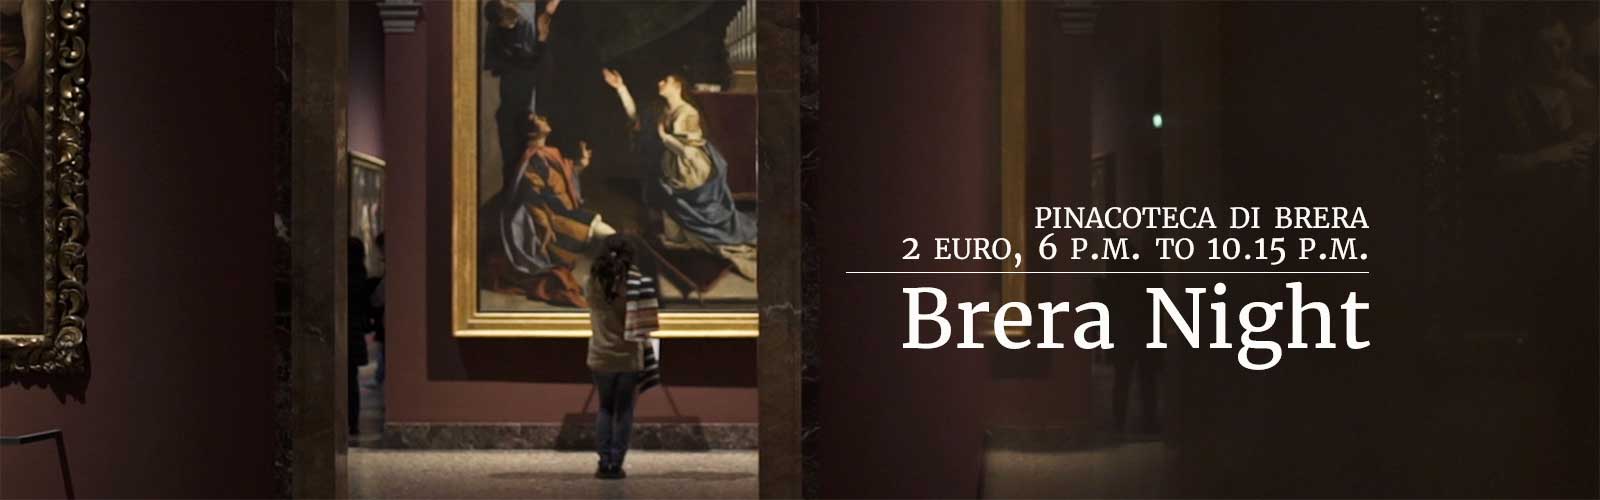 Brera Night at 2 euro